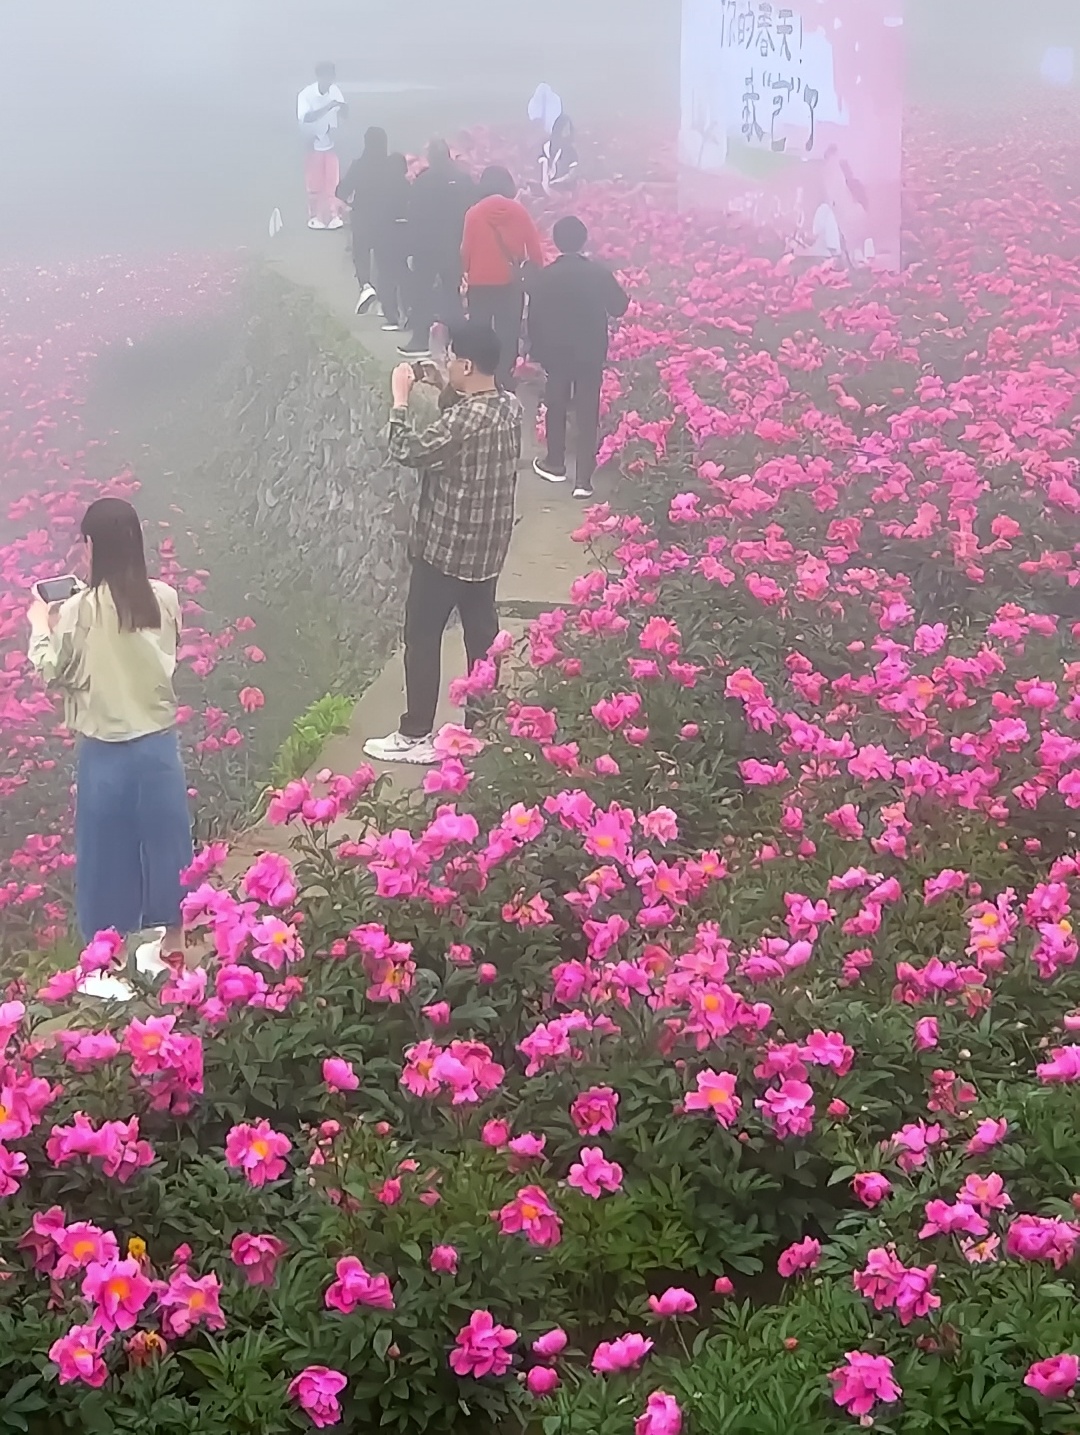 台州被忽略的宝藏地，黄岩白石栖云山居，浓雾如清沙般弥漫，让人仿佛置身于一个梦幻般的世界，漫步其中，视